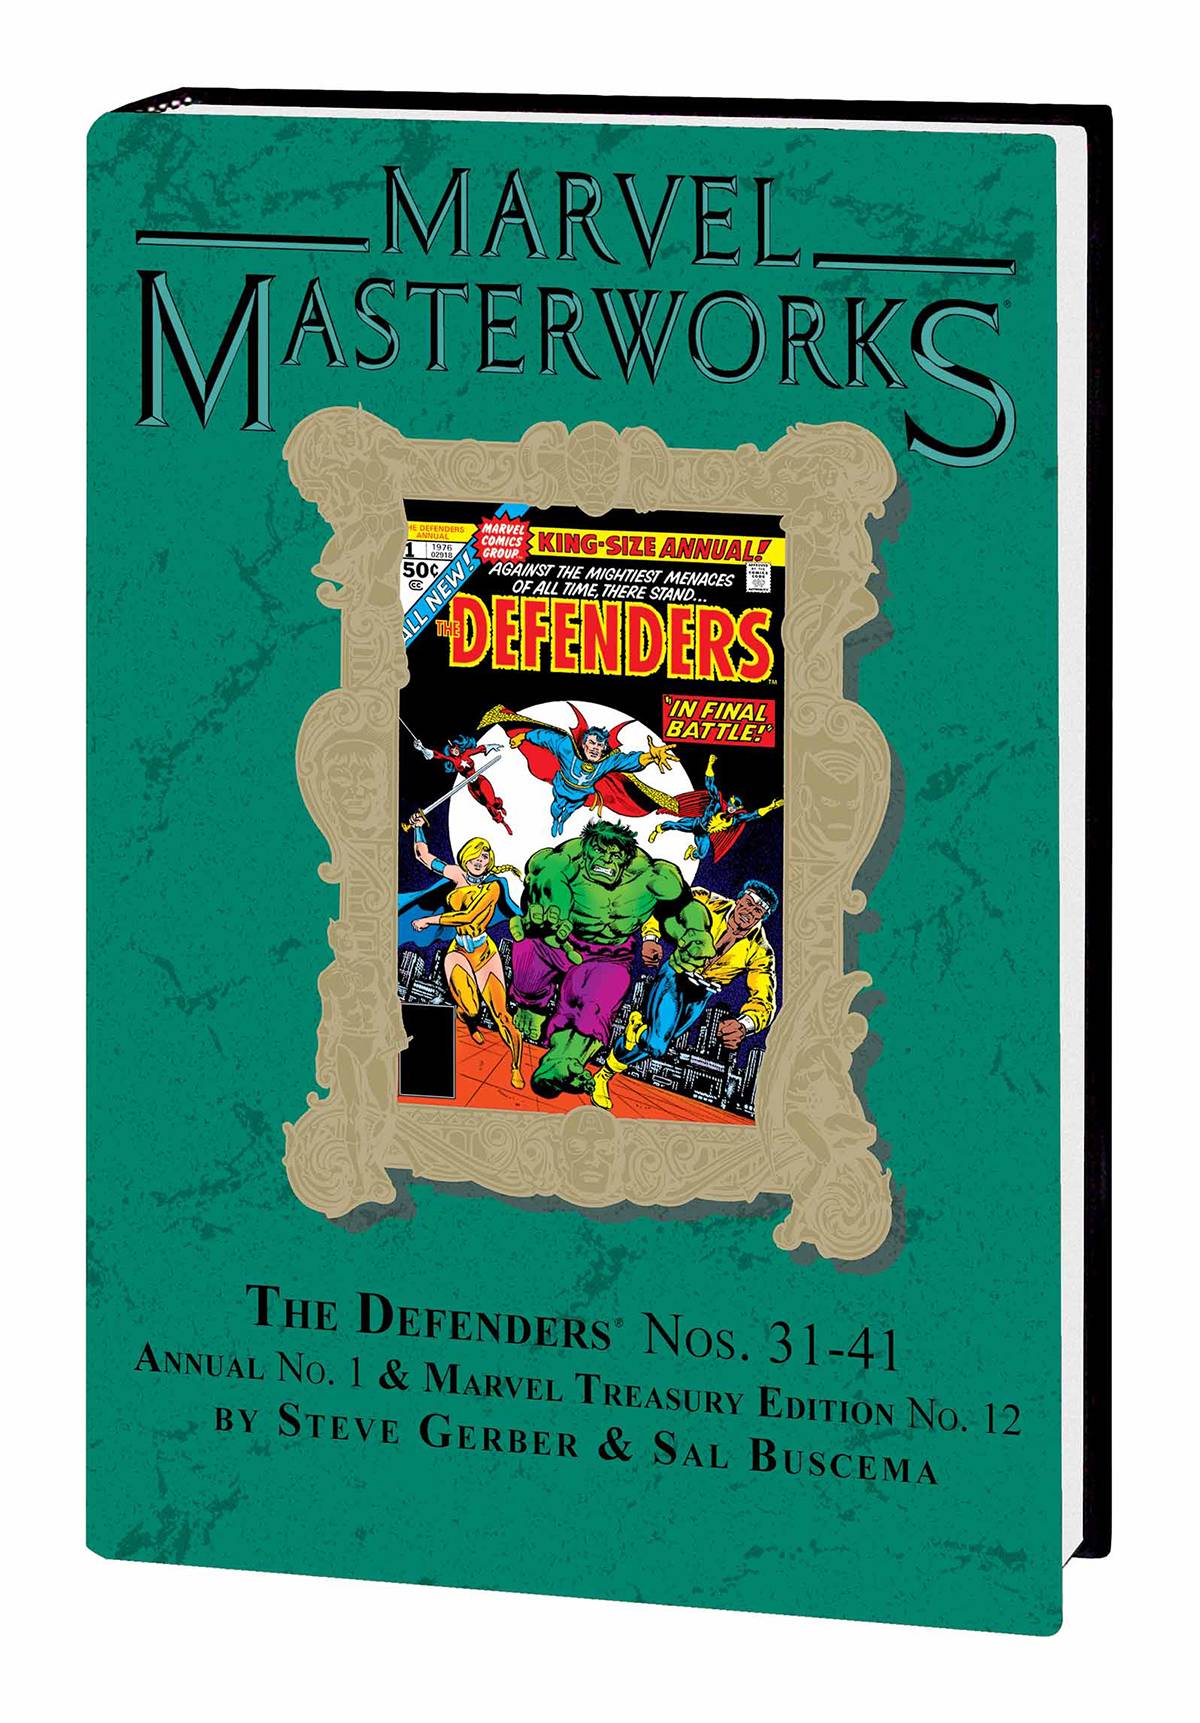 Marvel Masterworks Defenders Hardcover Volume 5 Direct Market Variant Edition 224